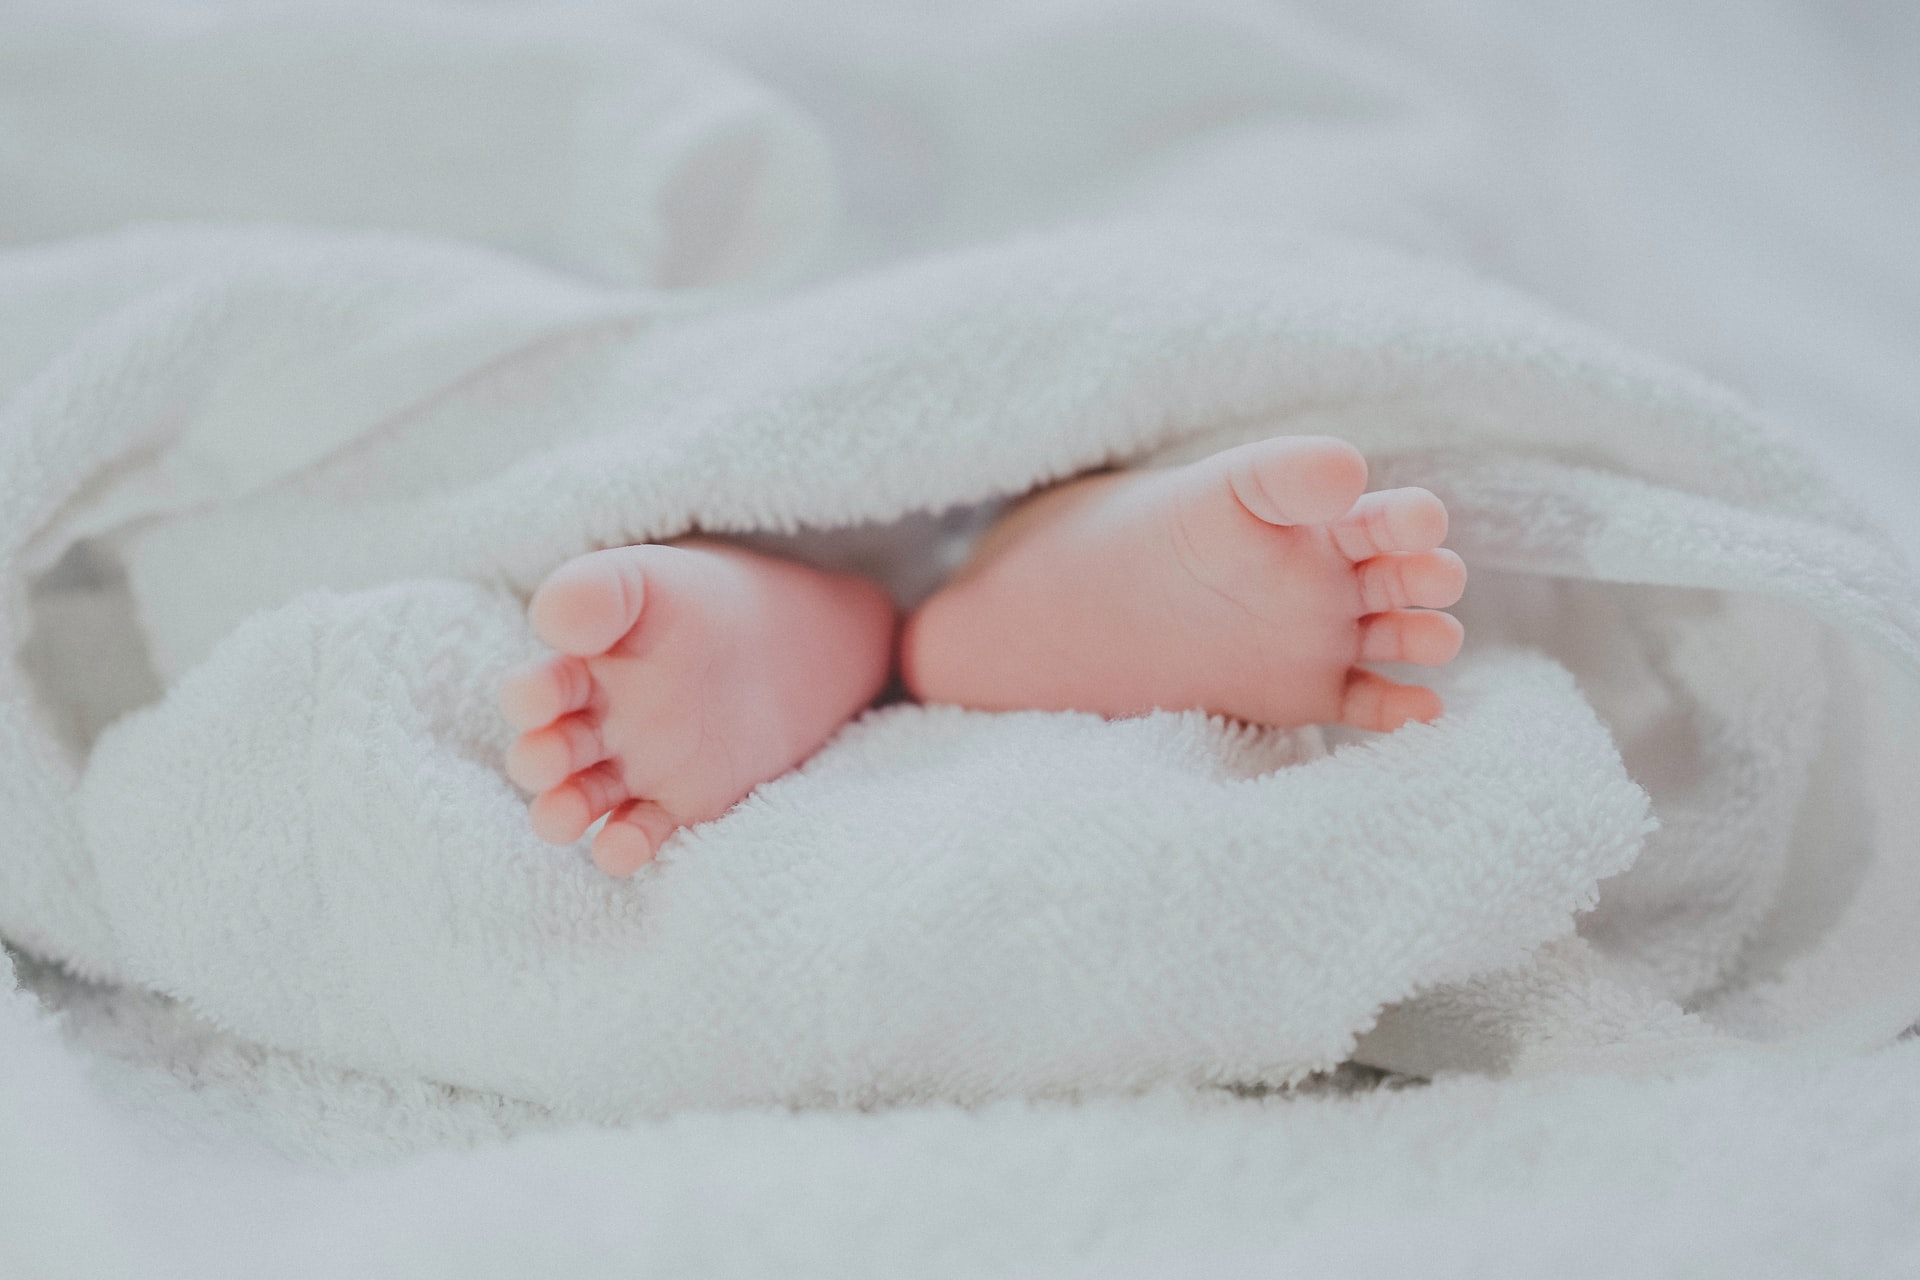 Dowiedz się, co zakładać dziecku na stopy od urodzenia do momentu, gdy zaczyna chodzić